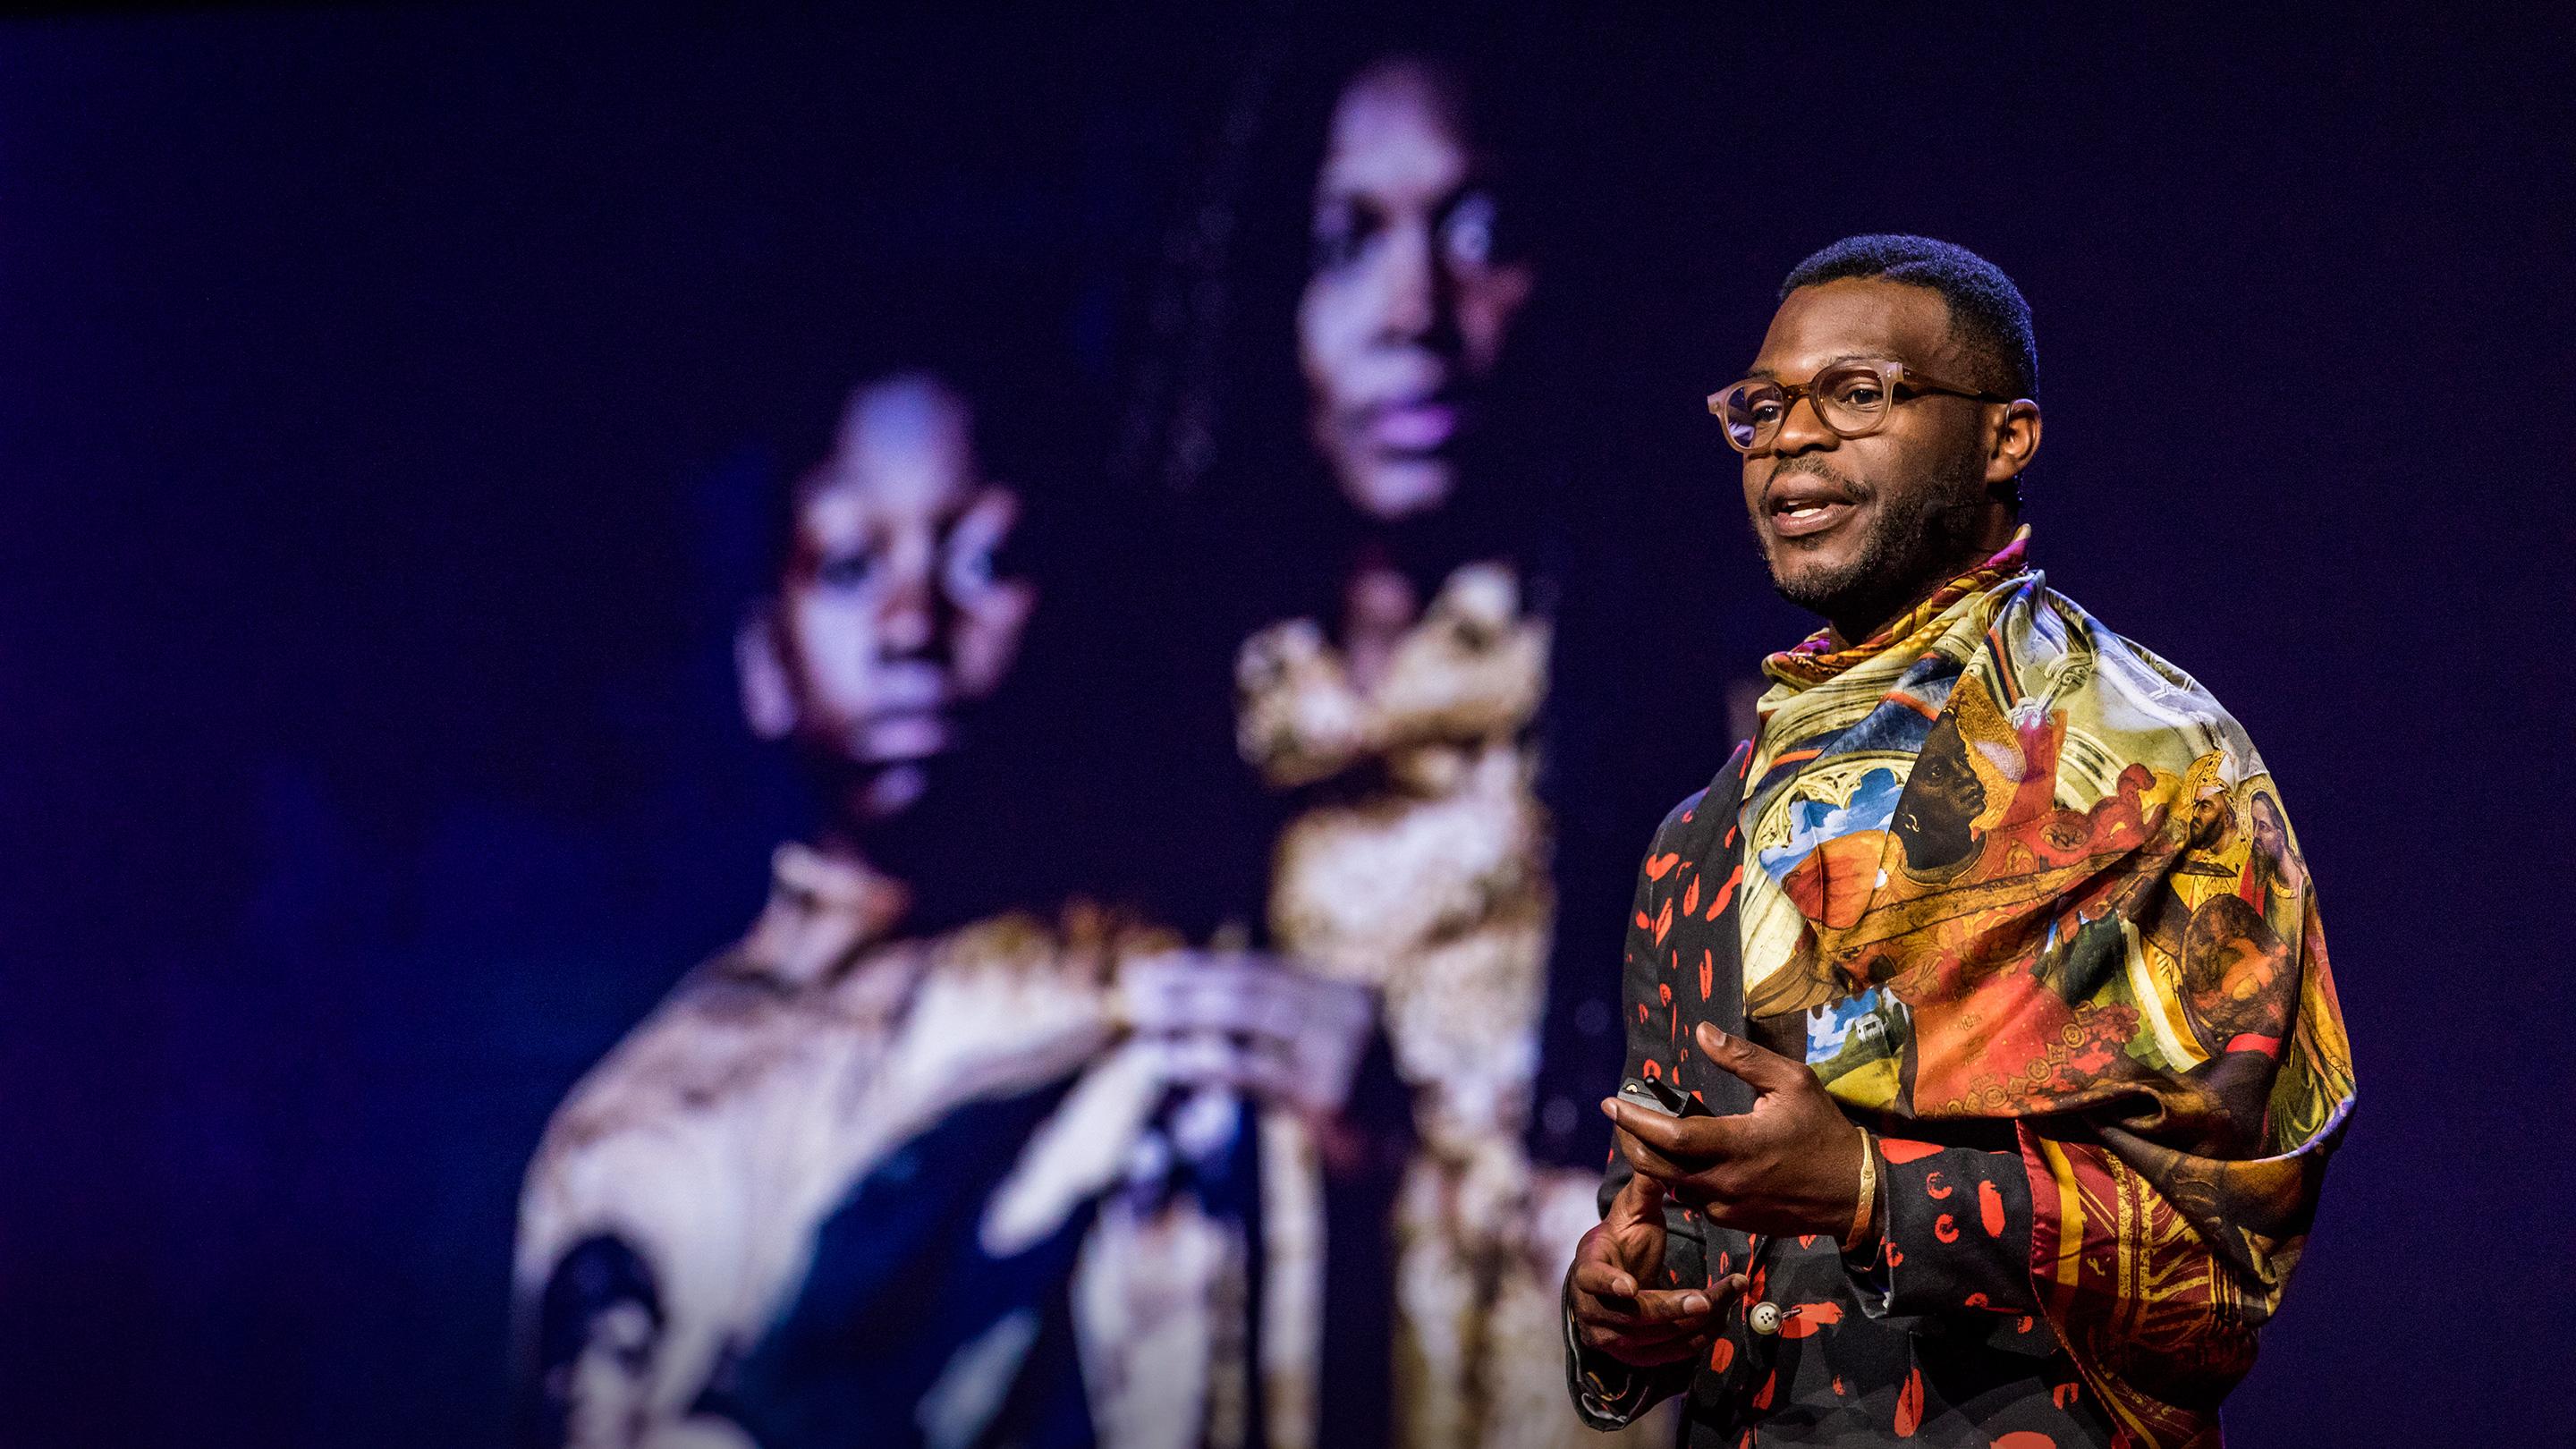 Moda que celebra la fortaleza y el espíritu africano | Walé Oyéjidé